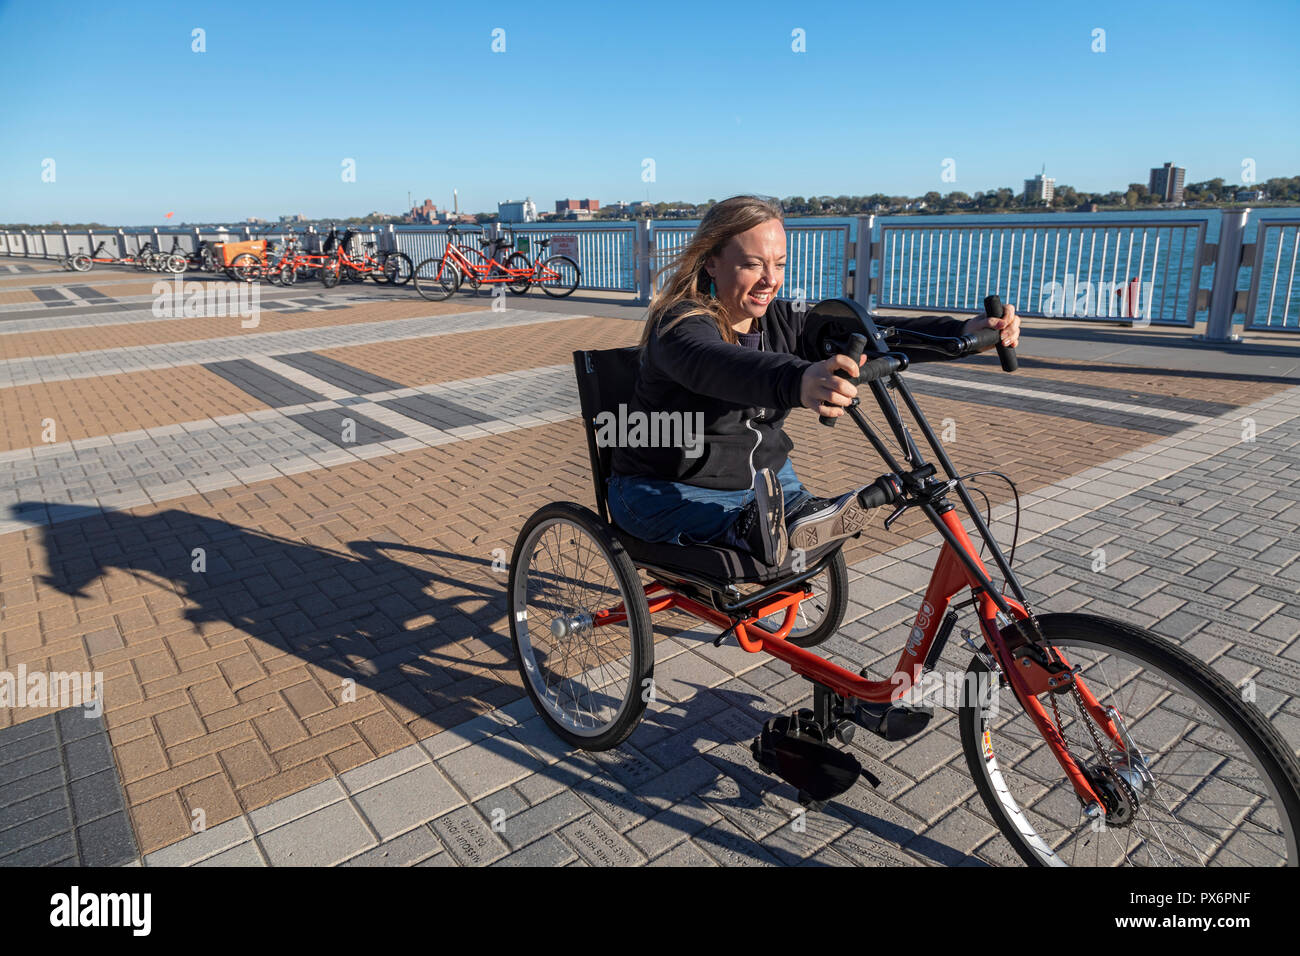 Detroit, Michigan - Les gens d'essayer des vélos adaptative, maintenant offerts par MoGo, Detroit's bike partager système. L'adaptive les vélos sont conçus pour peopl Banque D'Images